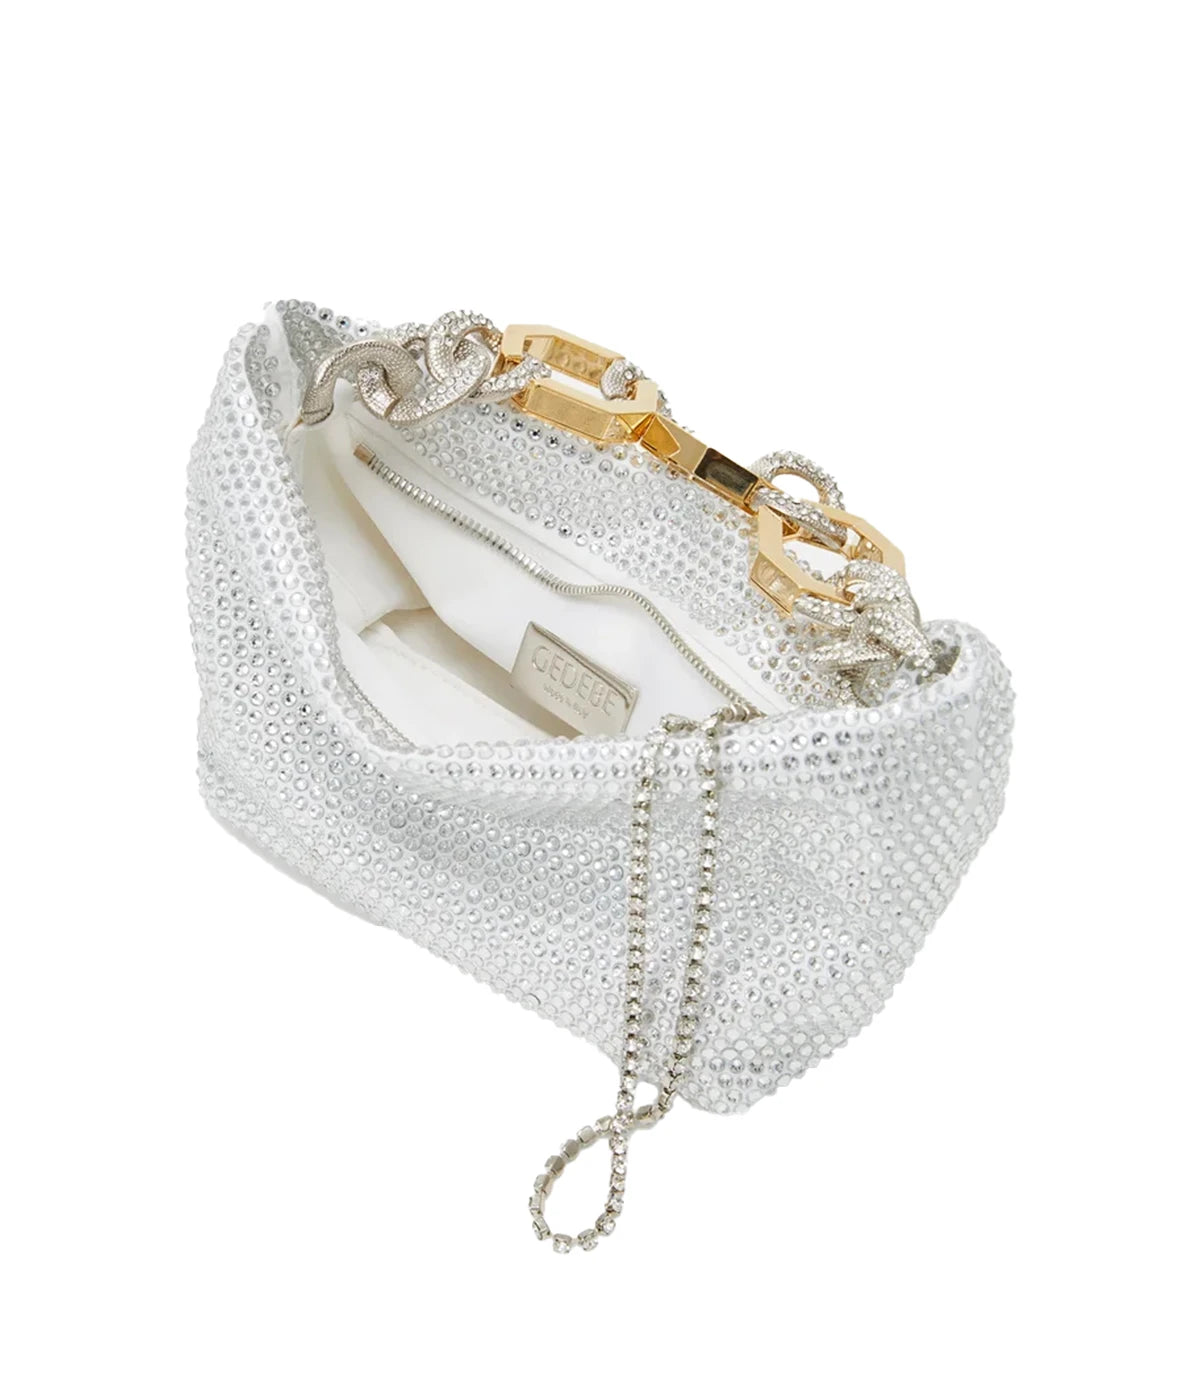 Jessye Satin Bag in White & Crystal